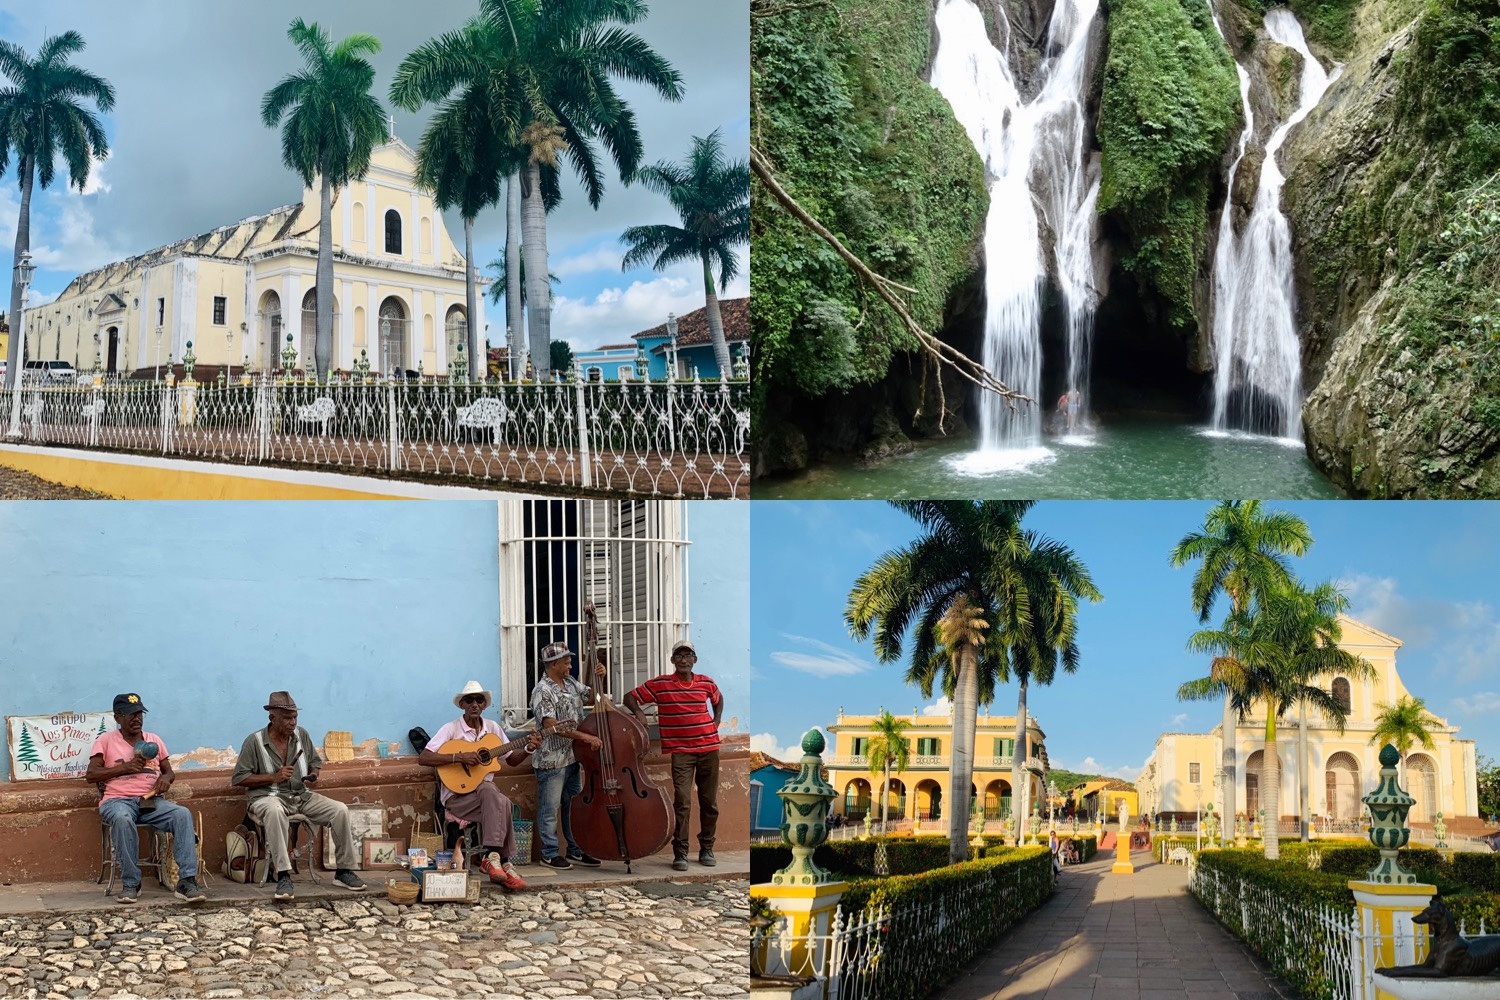 Route rondreis Cuba